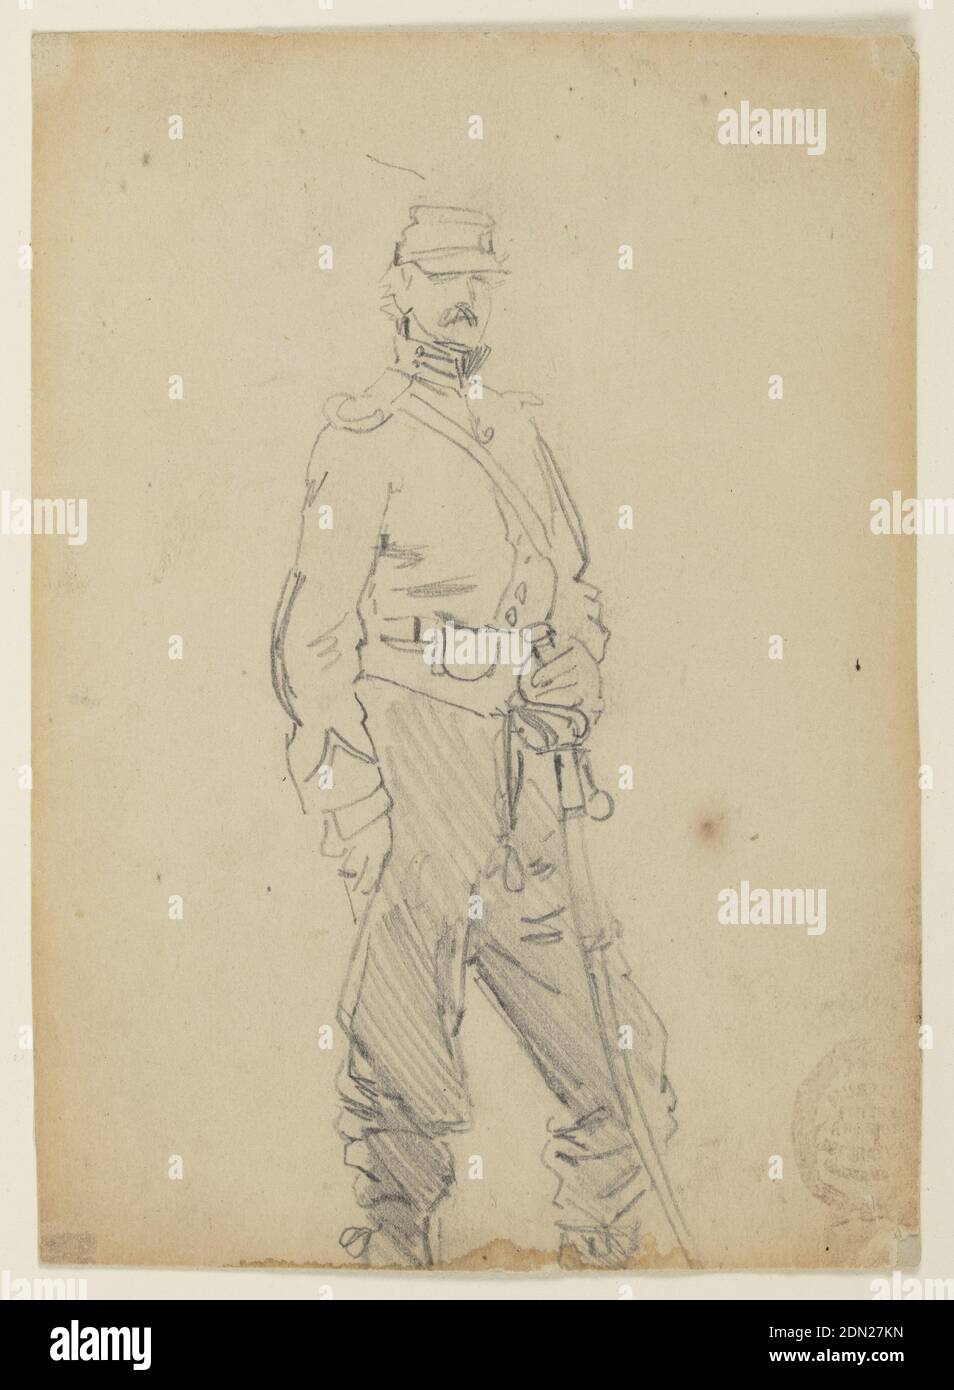 Officier permanent, Winslow Homer, américain, 1836–1910, Graphite sur papier crème, vue verticale d'un officier debout à l'aise., États-Unis, 1862, figures, dessin Banque D'Images